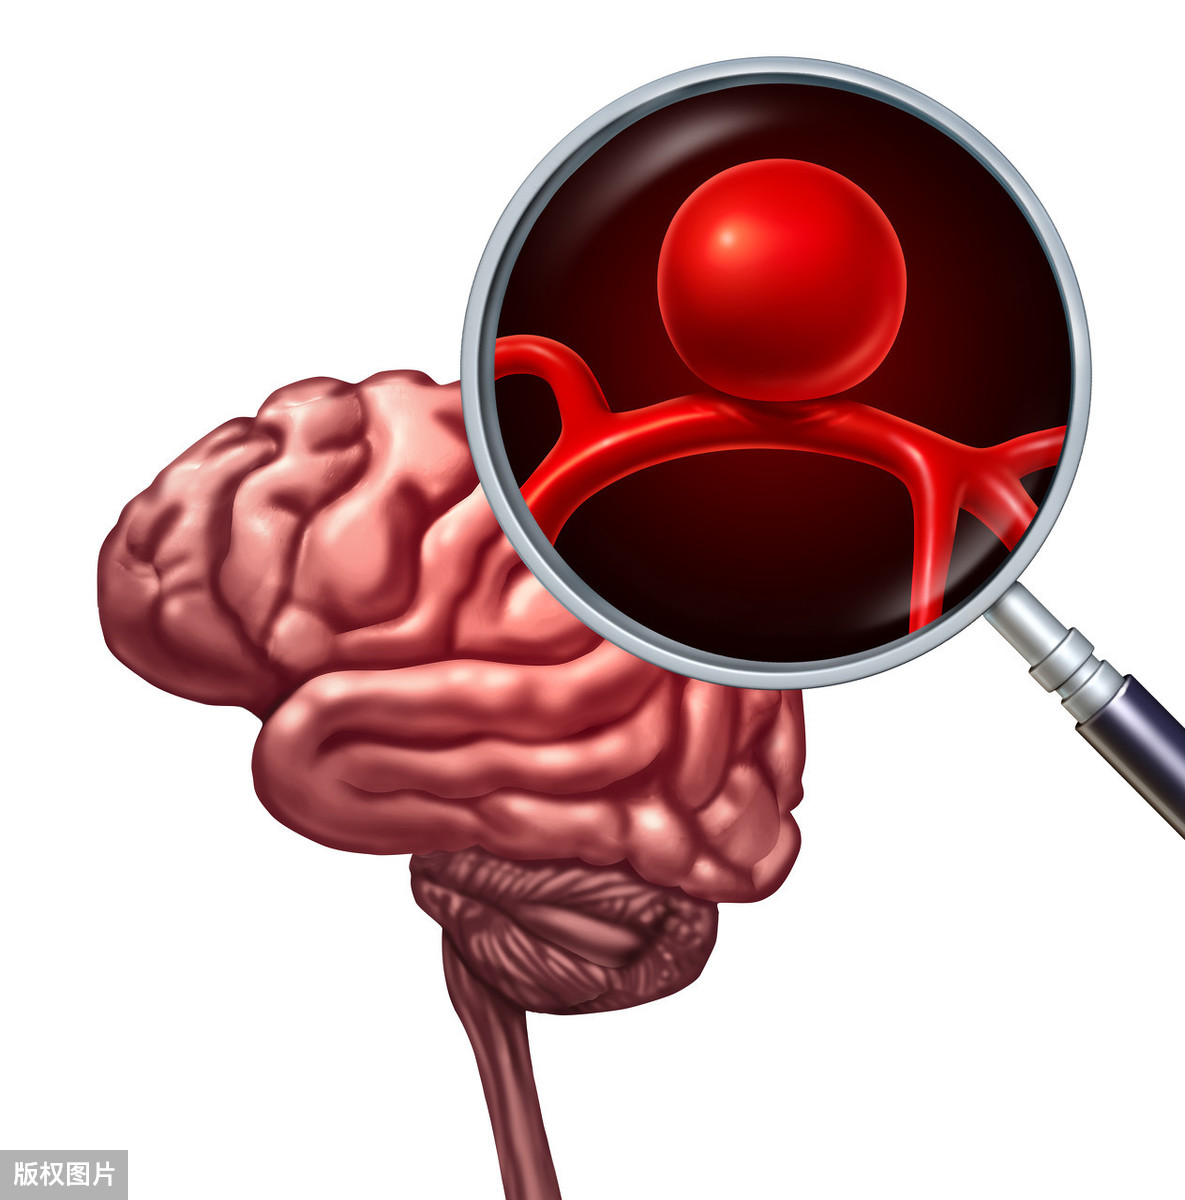 解剖变异与前交通复合体动脉瘤破裂出血后脑血管痉挛的关系